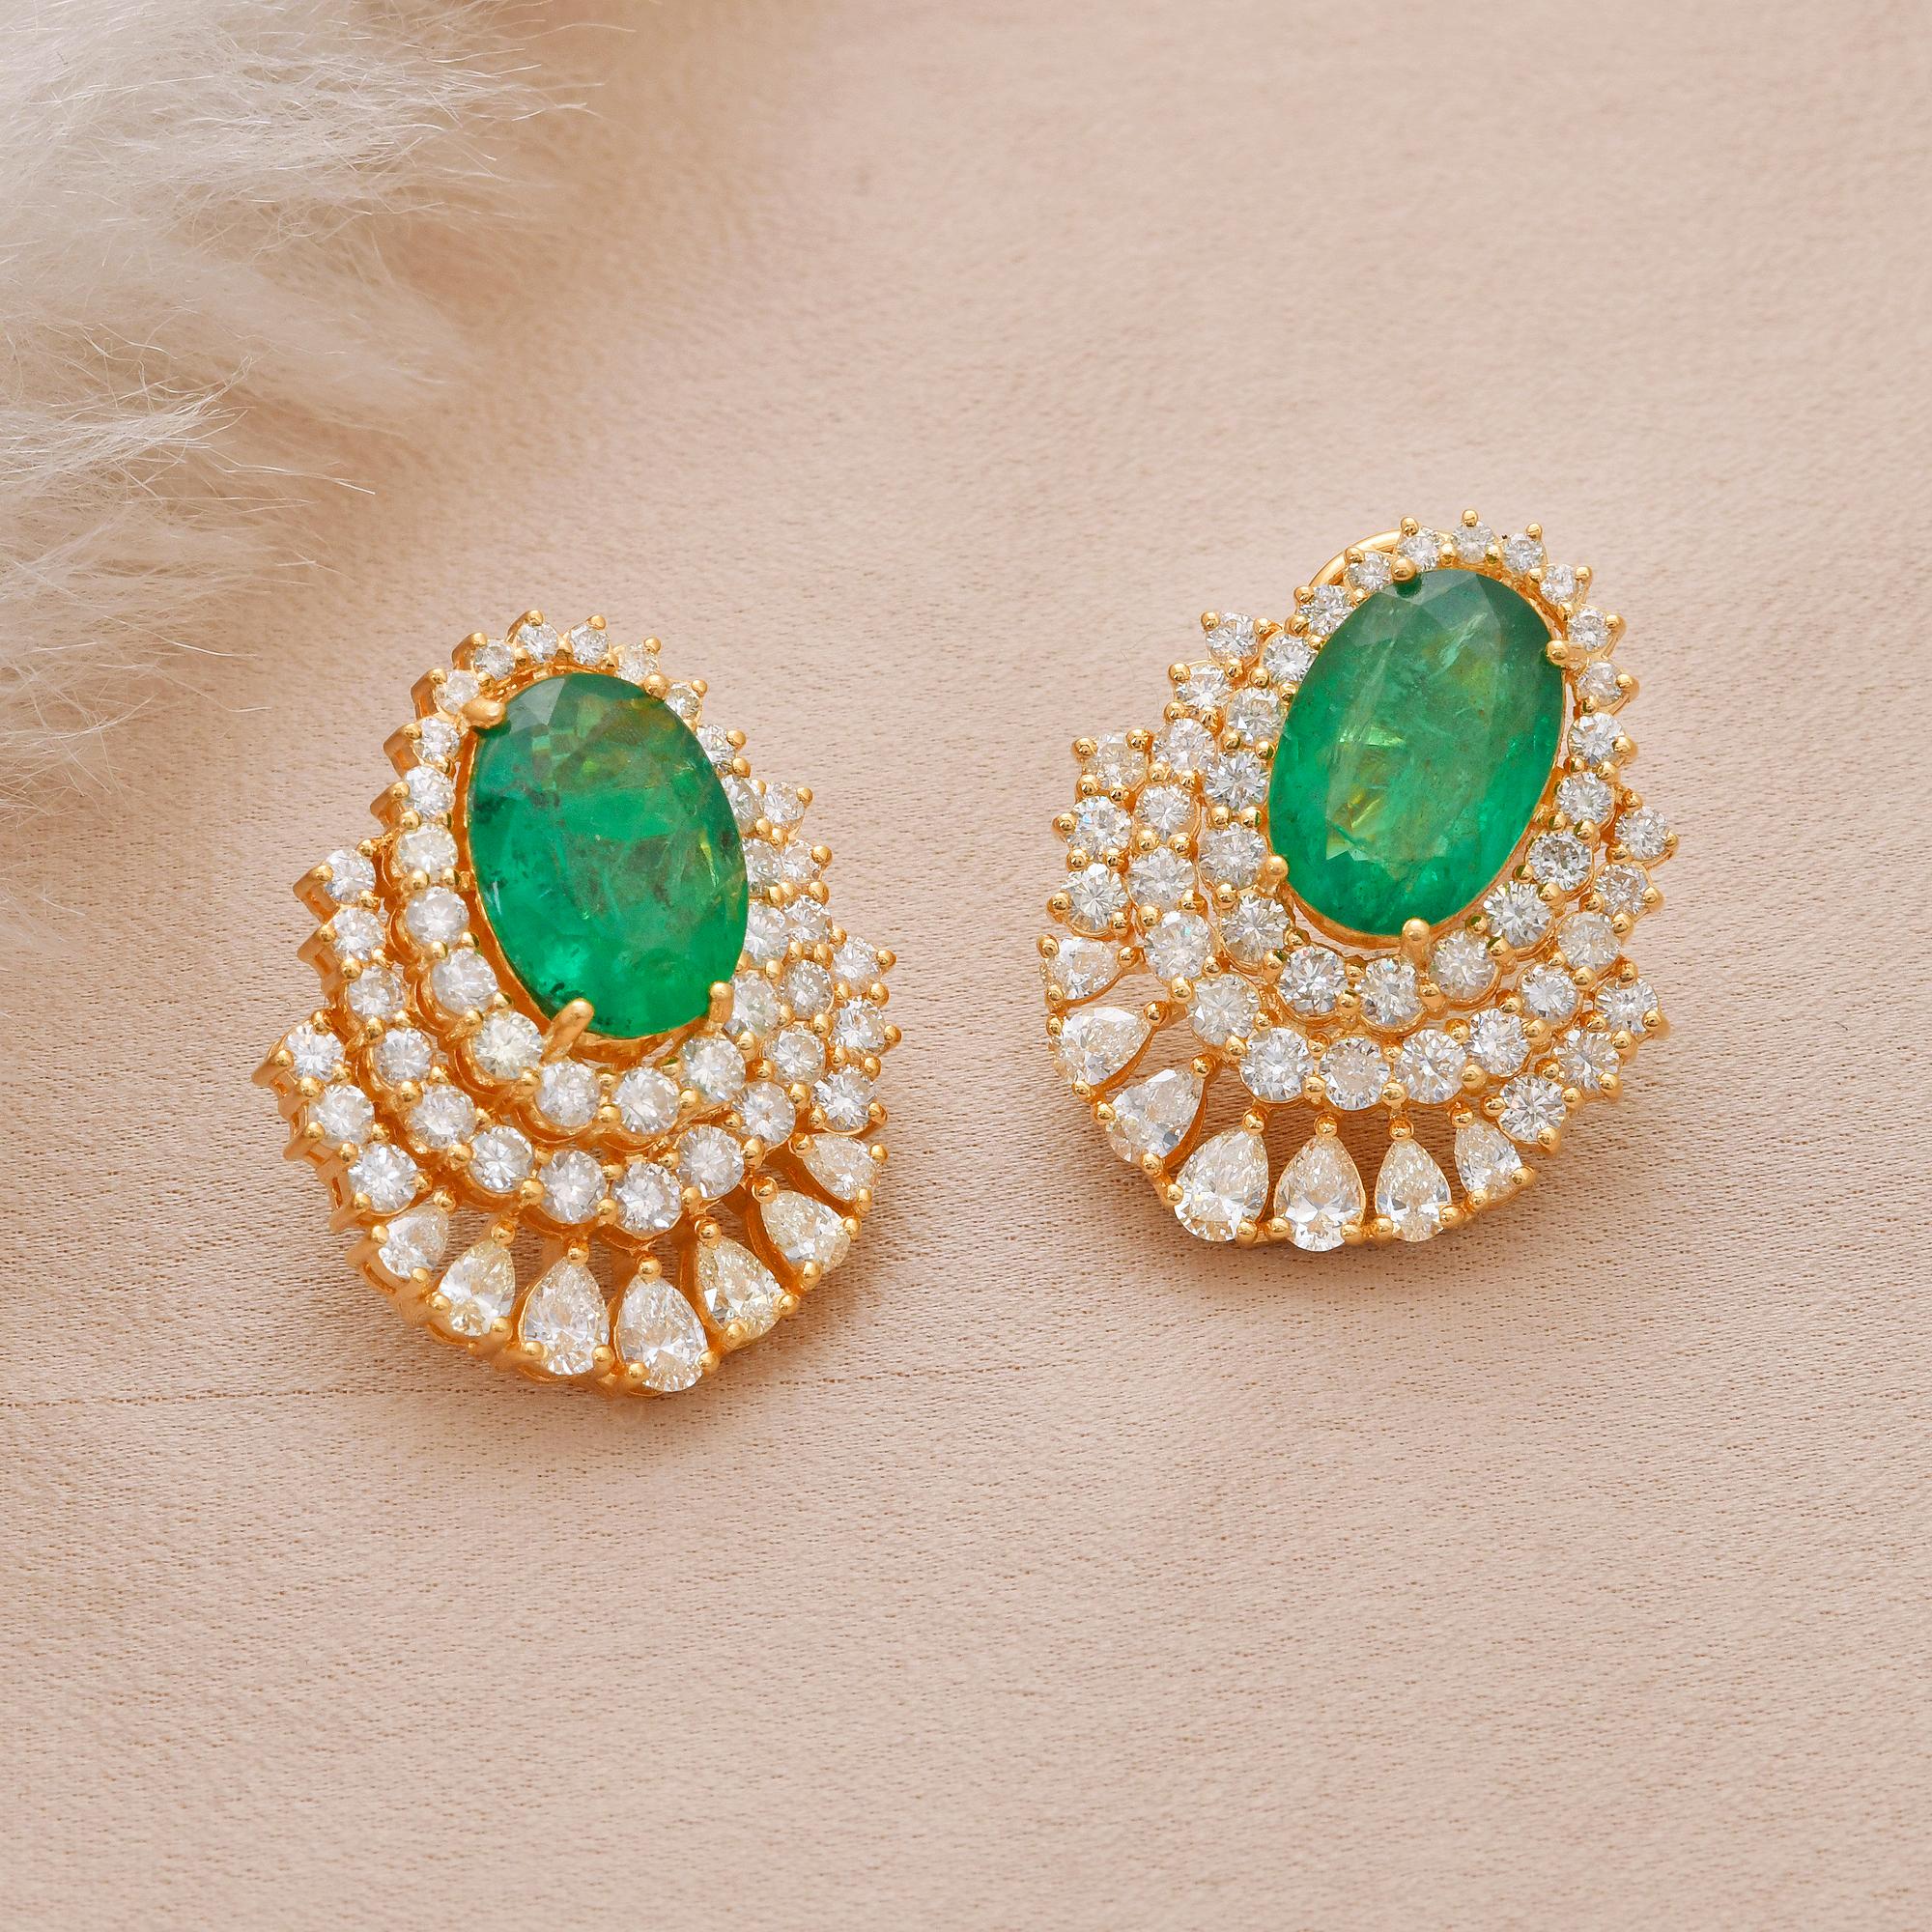 Modern Oval Zambian Emerald Gemstone Earrings Pear Diamond 14k Yellow Gold Fine Jewelry For Sale